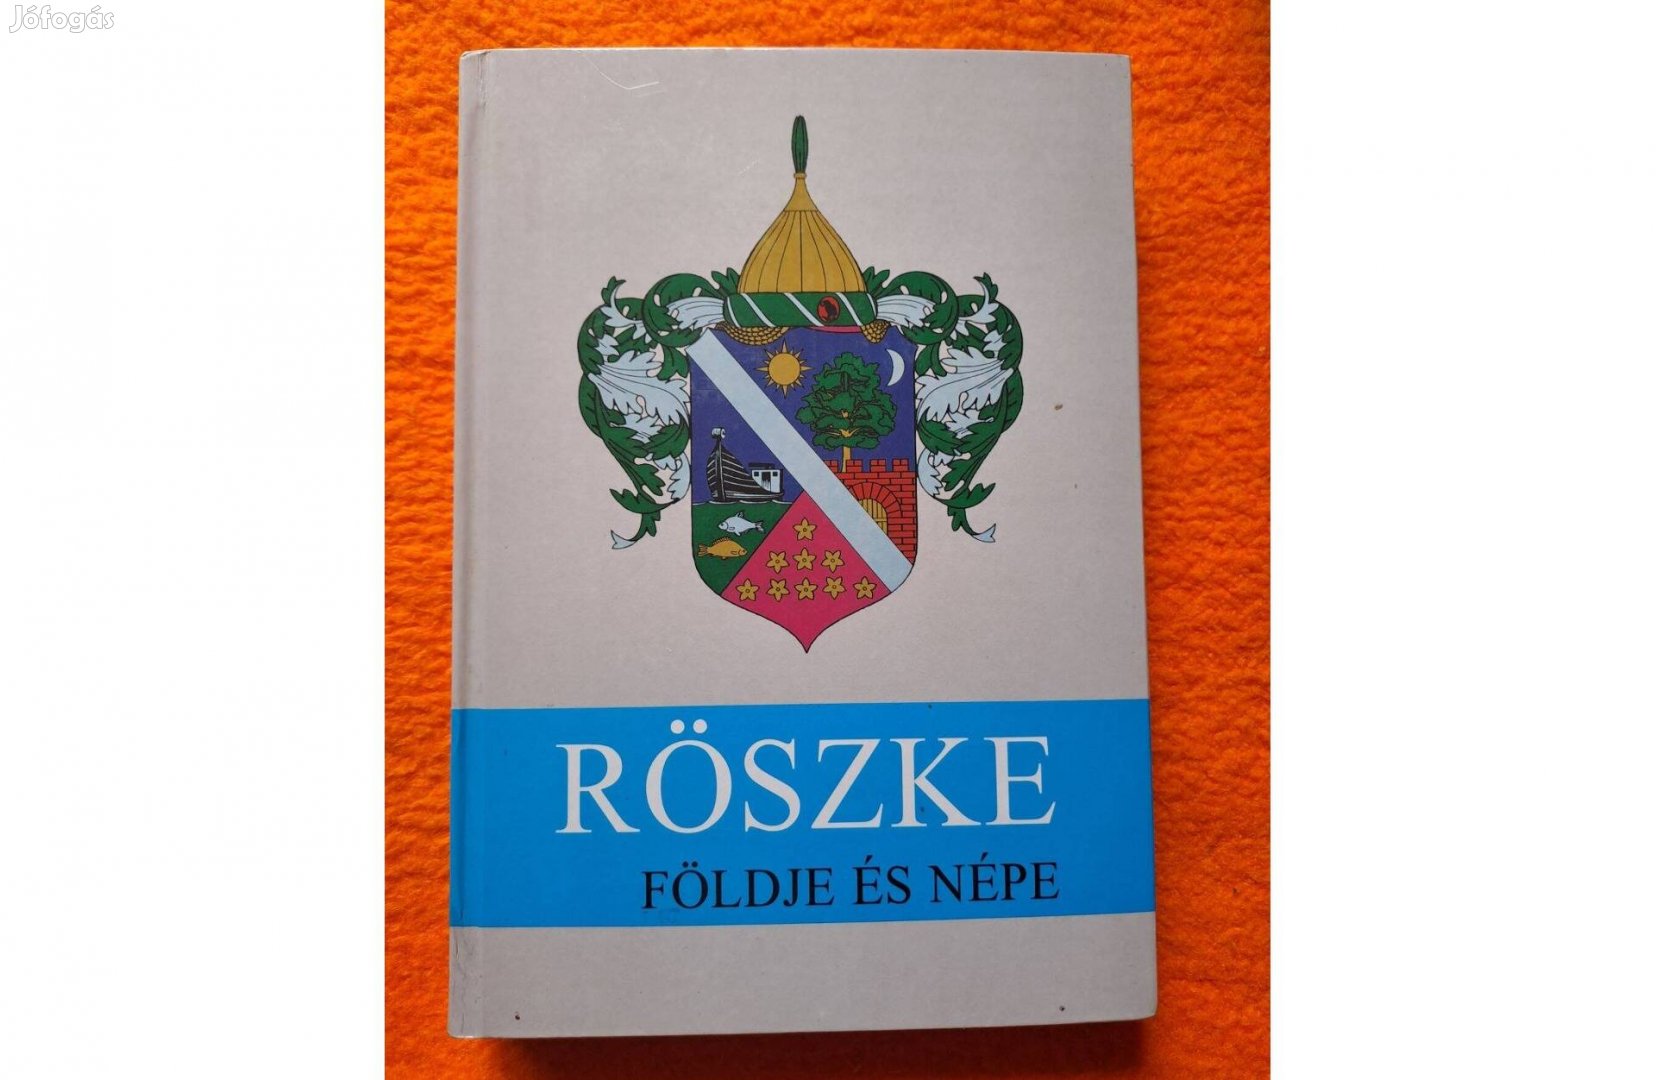 Röszke földje és népe - Szerkesztette: Péter László - Szeged, 1996